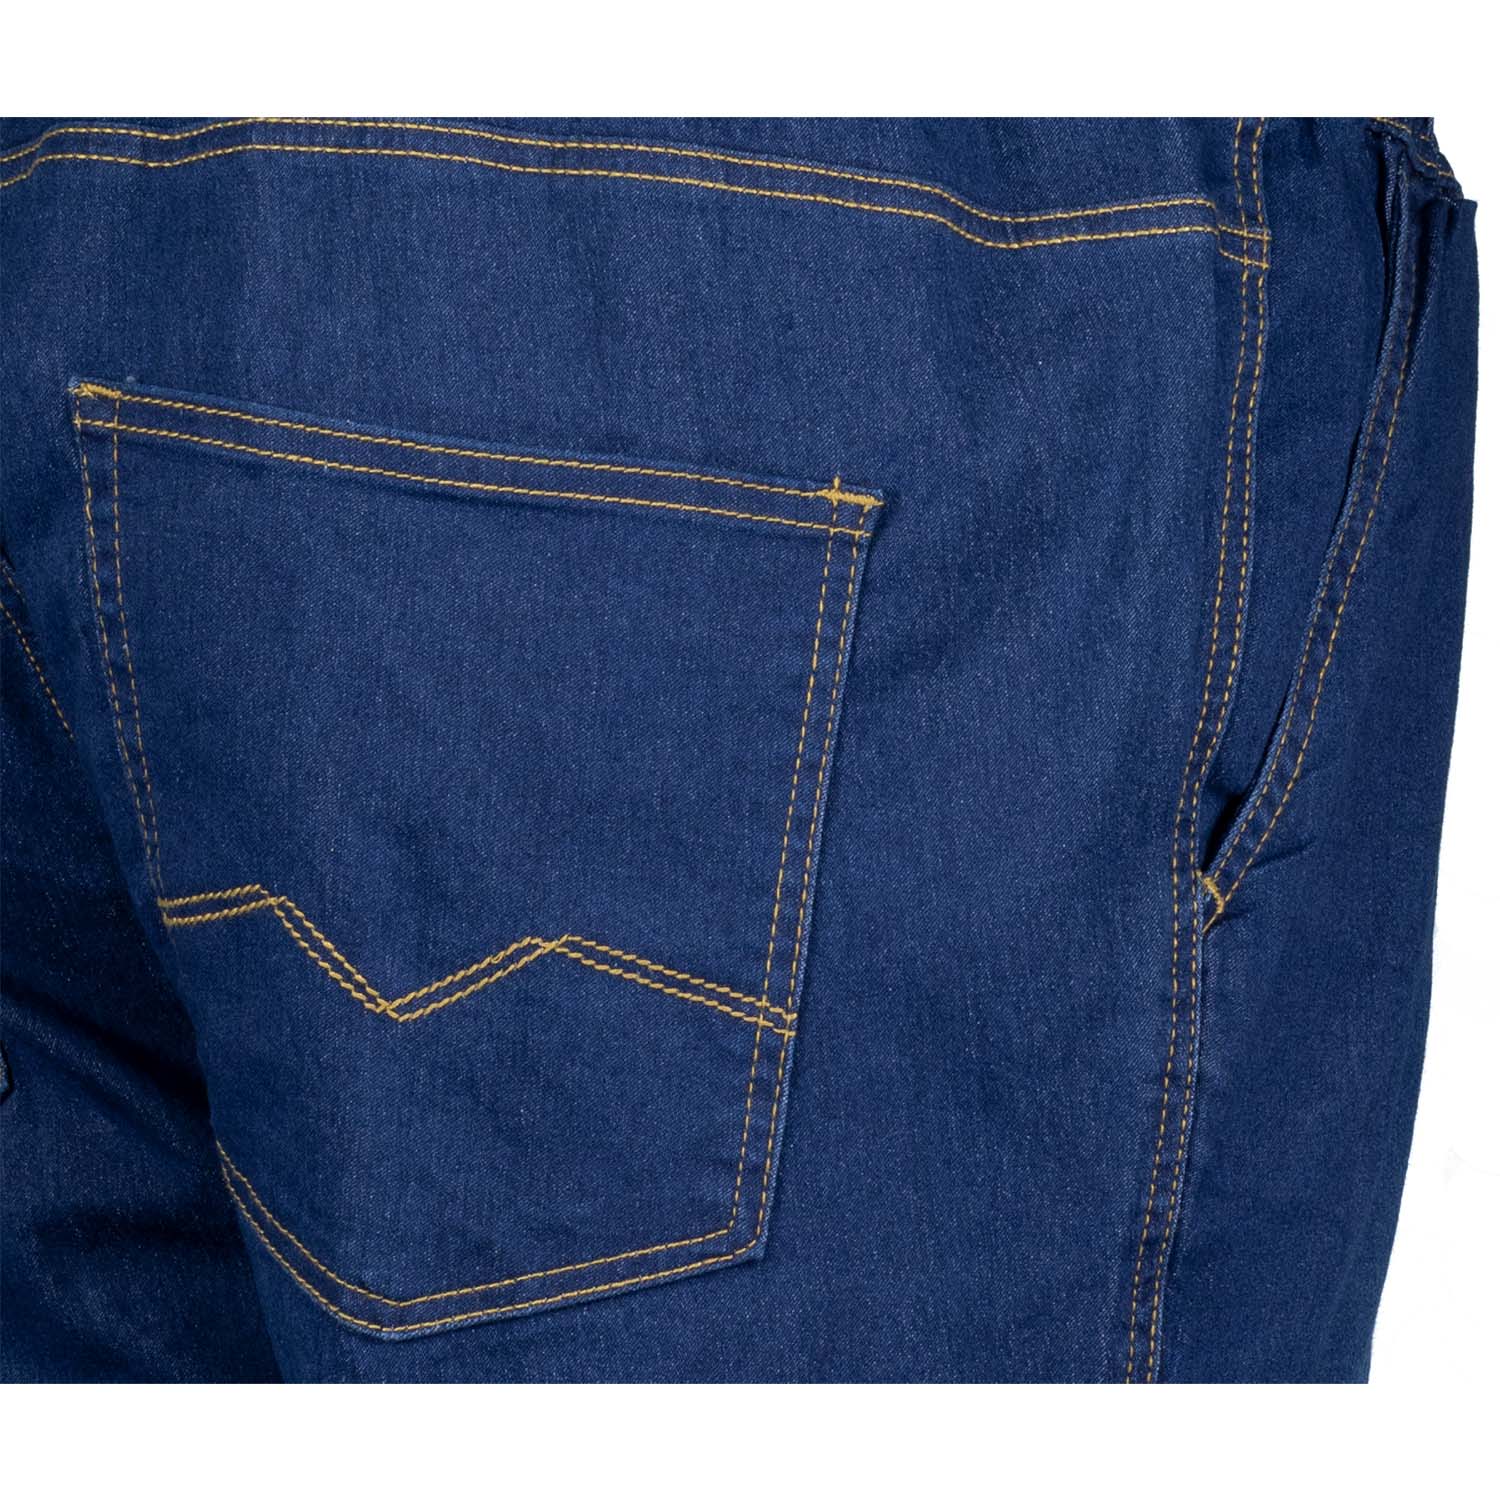 Übergrößen Jeans Jogginghose lang Serie "Texas" für Herren in 2XL-12XL dunkelblau von Adamo